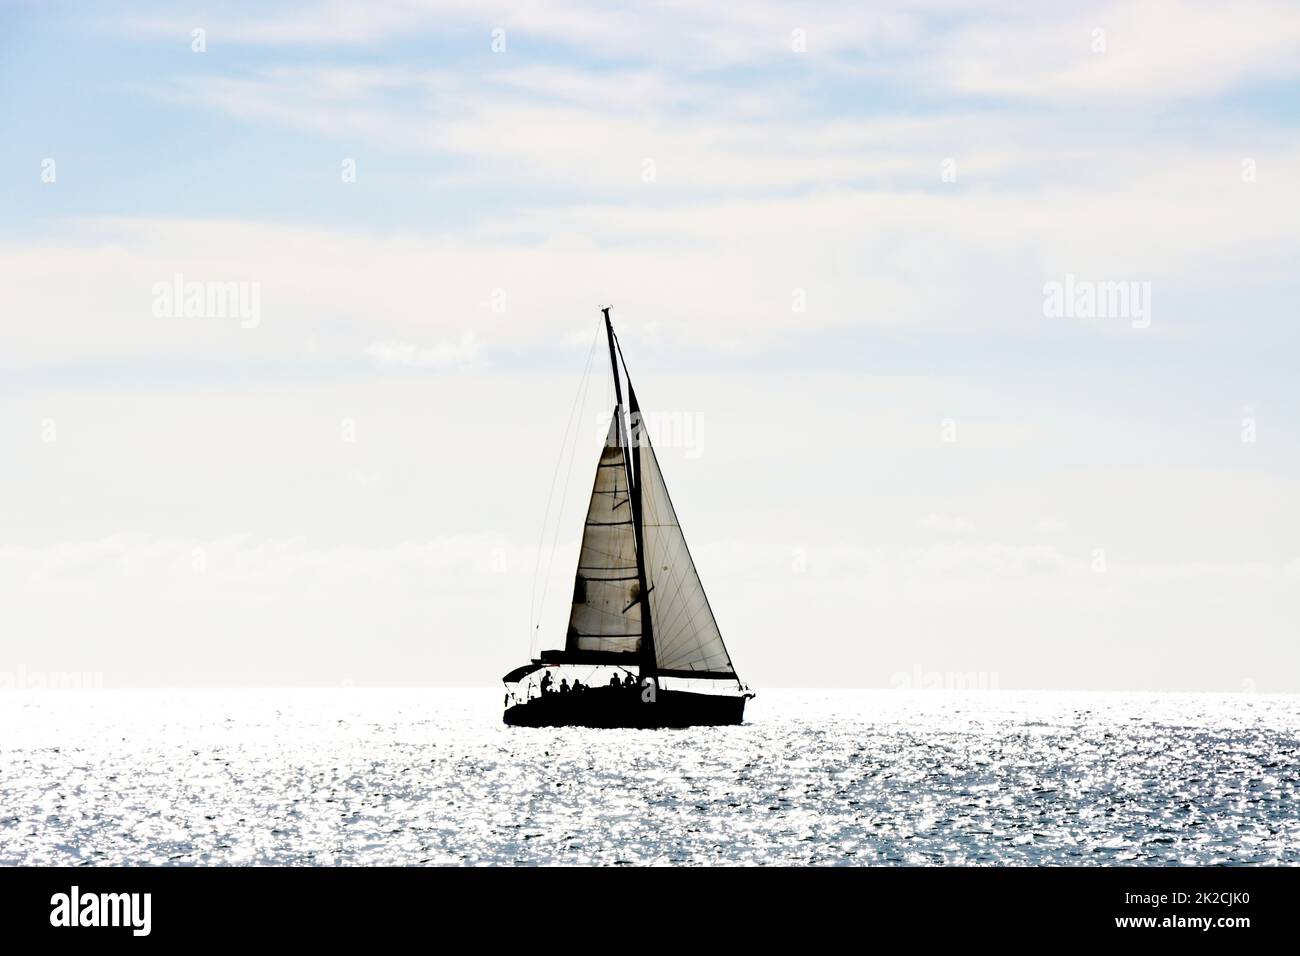 Segelschiff im Gegenlicht - Symbolbild fÃ¼r Freiheit und Fernweh Stock Photo